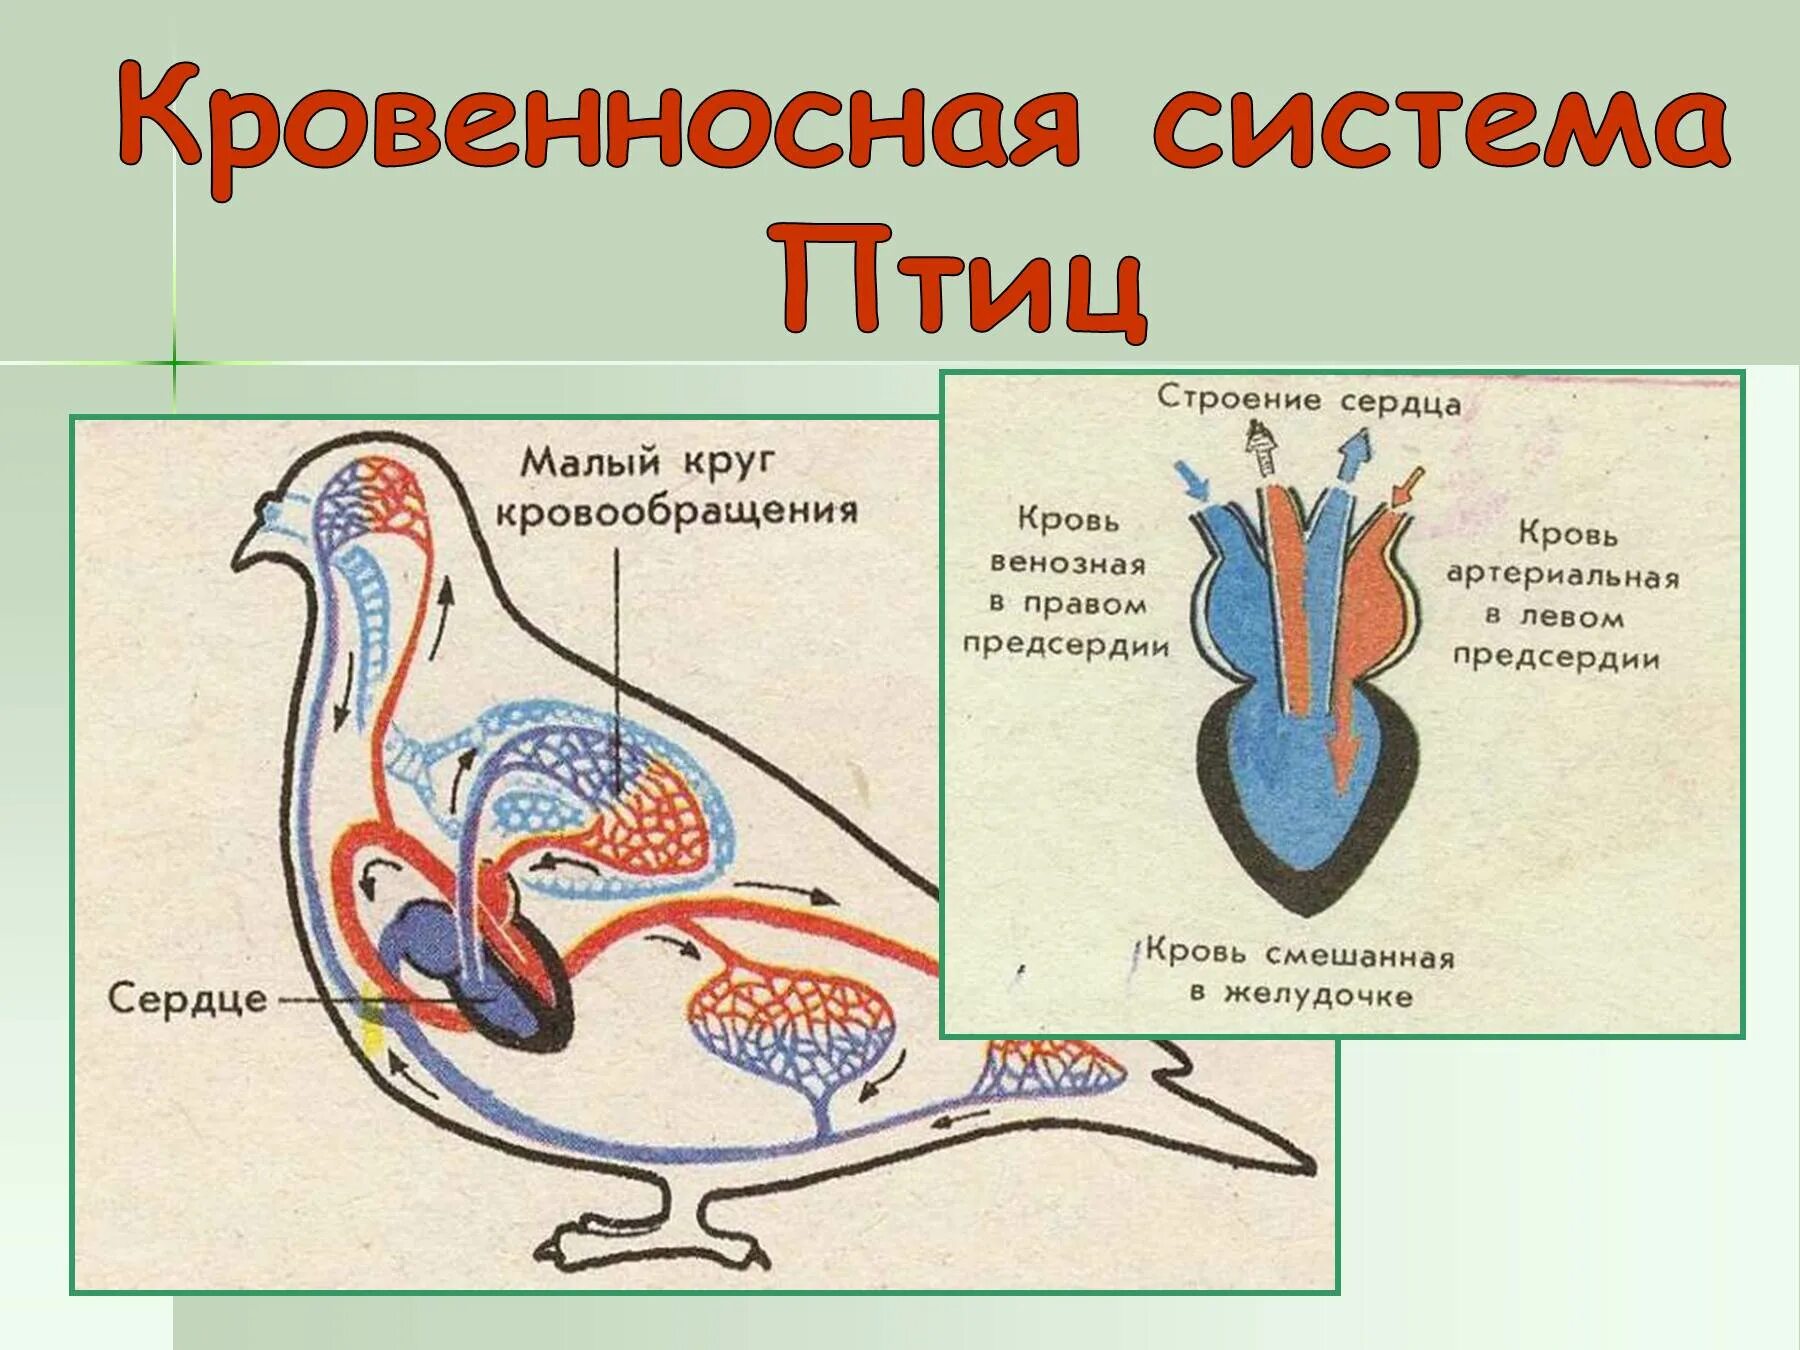 Система кровообращения птиц. Кровеносная система птиц схема. Строение сердца птиц. Строение кровеносной системы птиц. Процесс кровообращения птиц